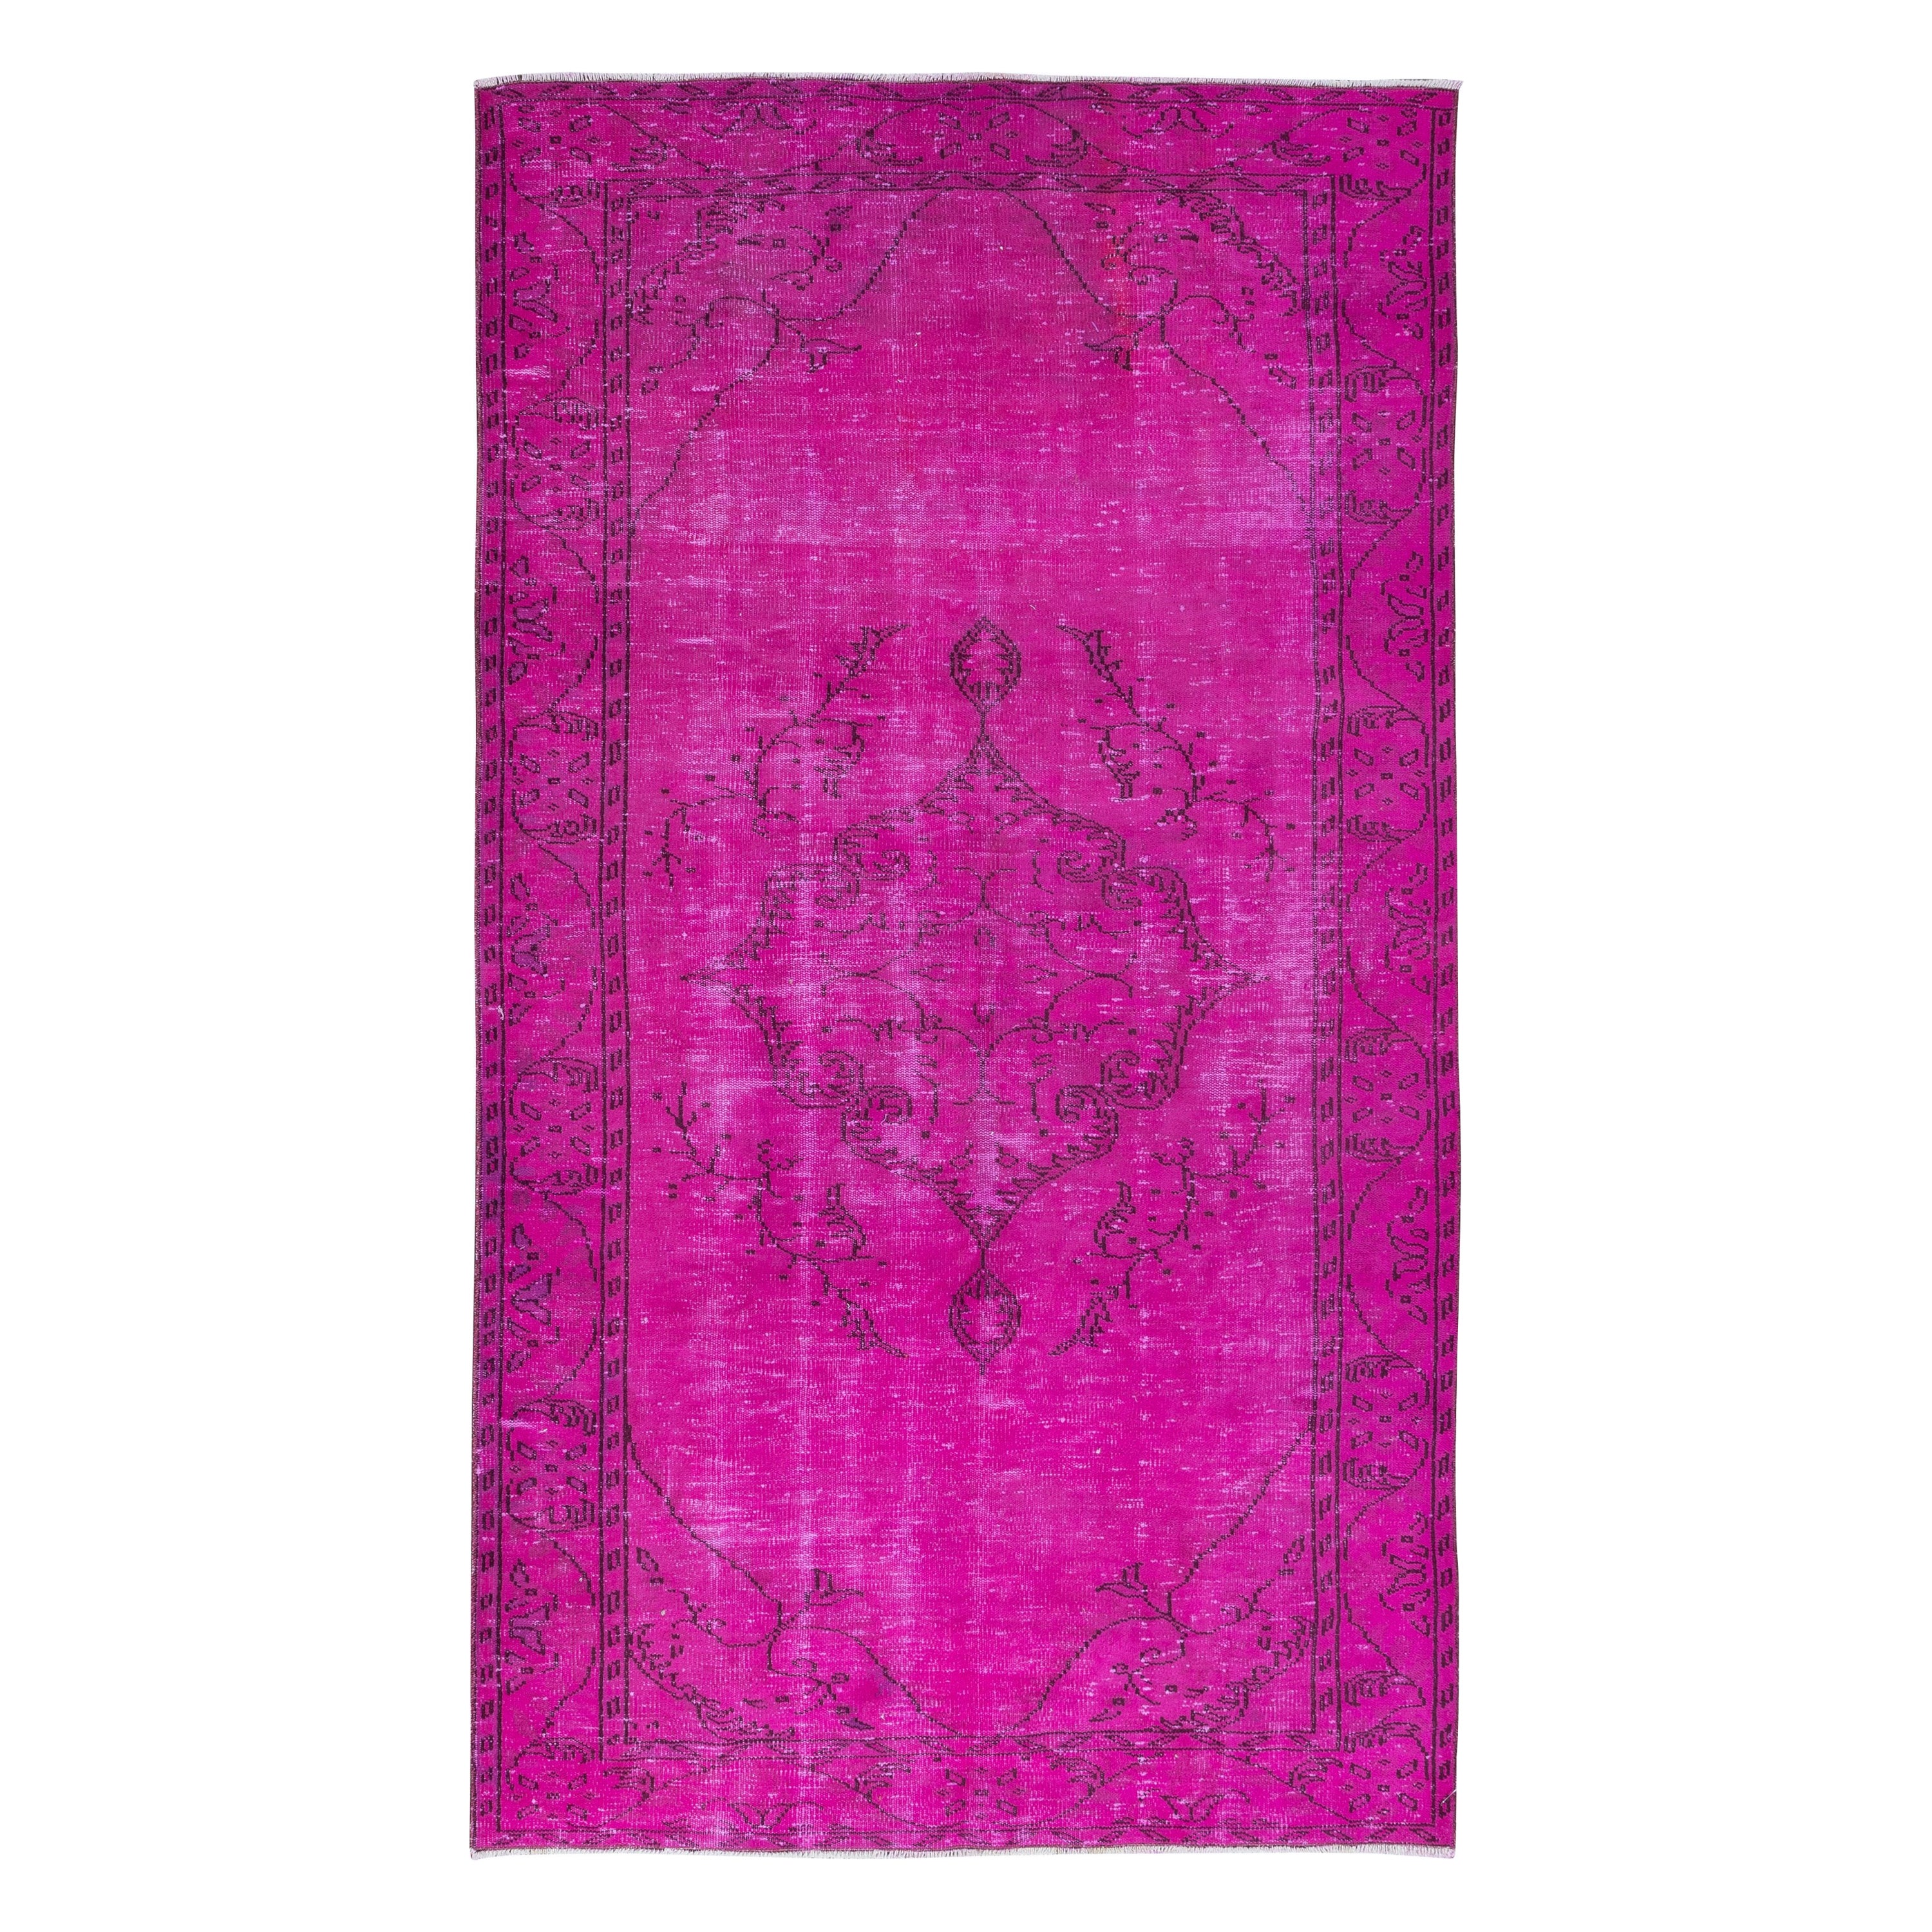 5.4x9.3 Ft Contemporary Wool Area Rug in Pink, Handknotted in Turkey (Tapis de laine contemporain en rose, noué à la main en Turquie)